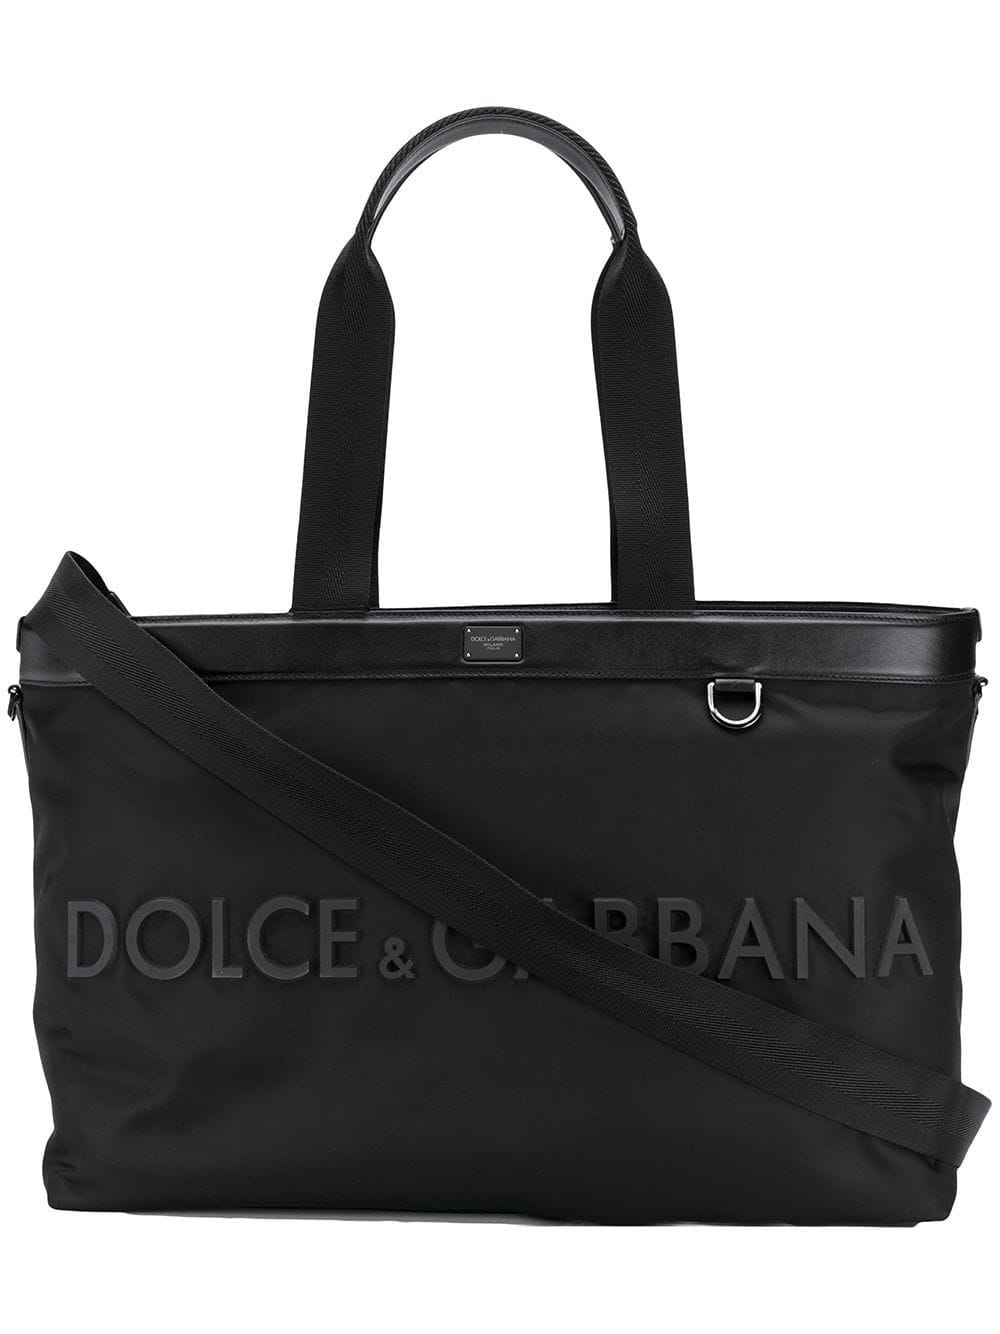 фото Dolce & Gabbana сумка-тоут с логотипом